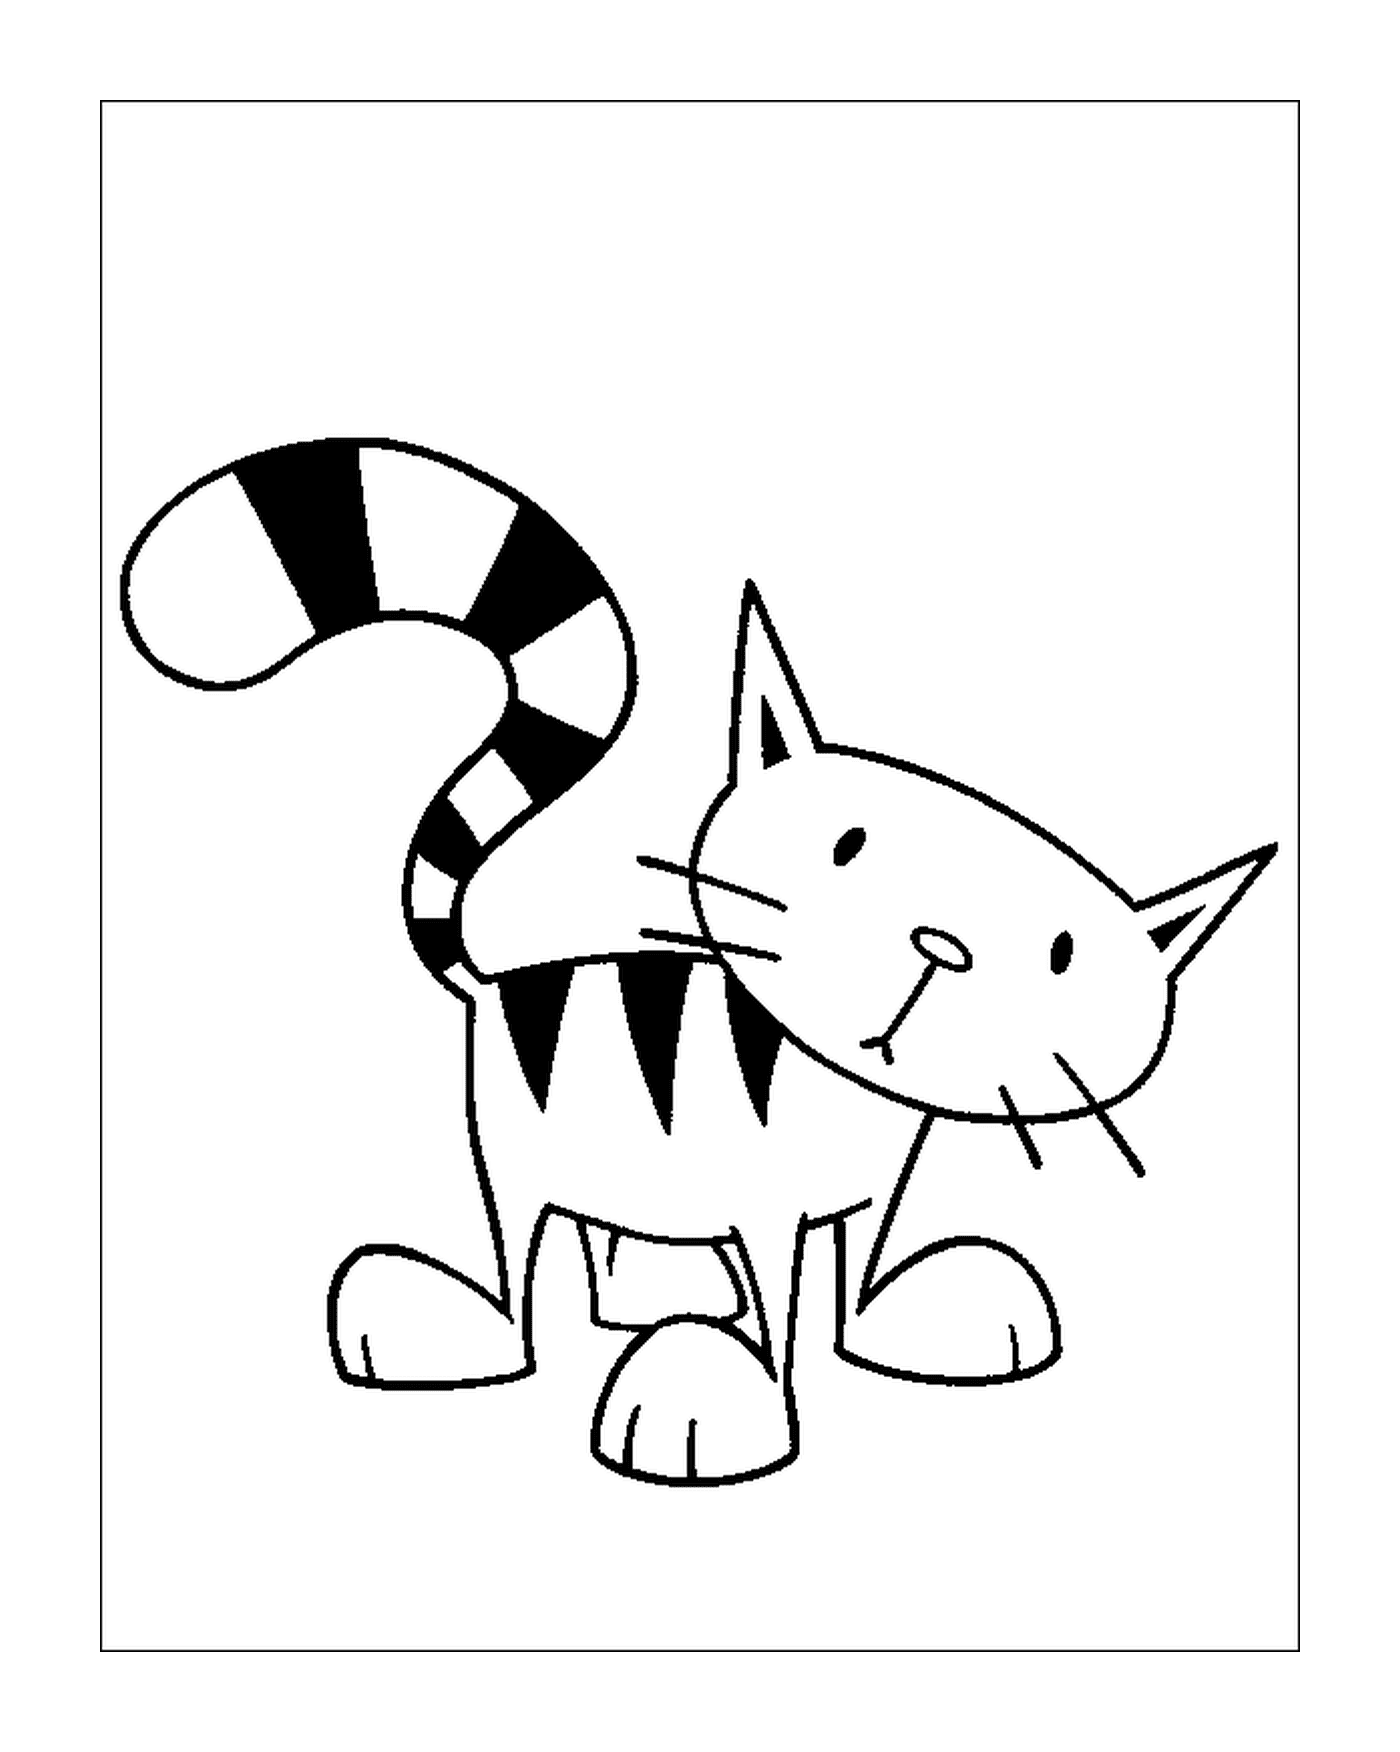  A striped cat 